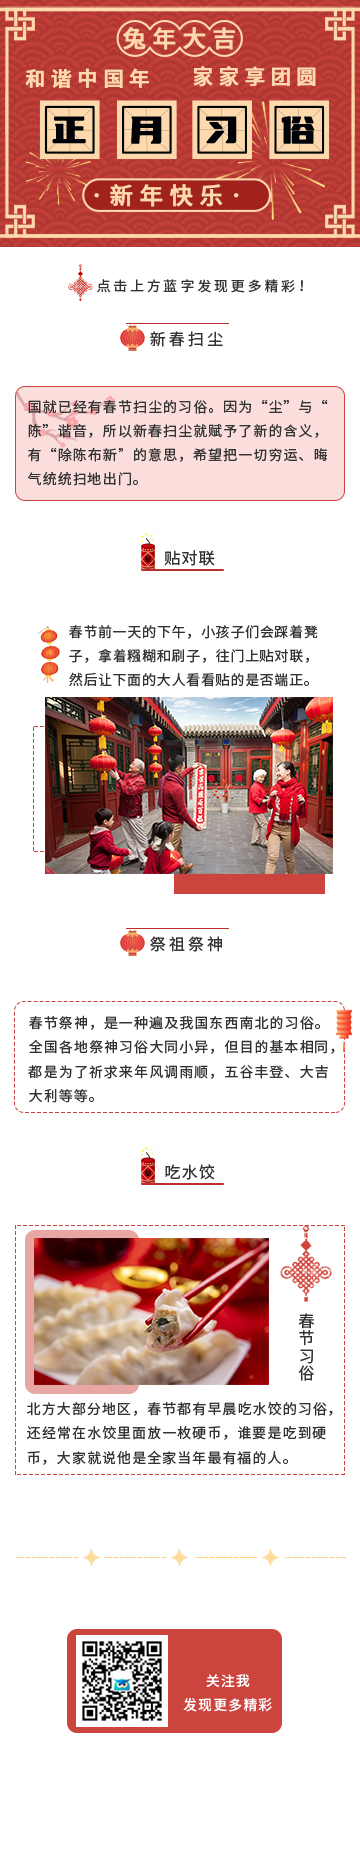 正月习俗春节新年快乐兔年大吉传统节日GIF